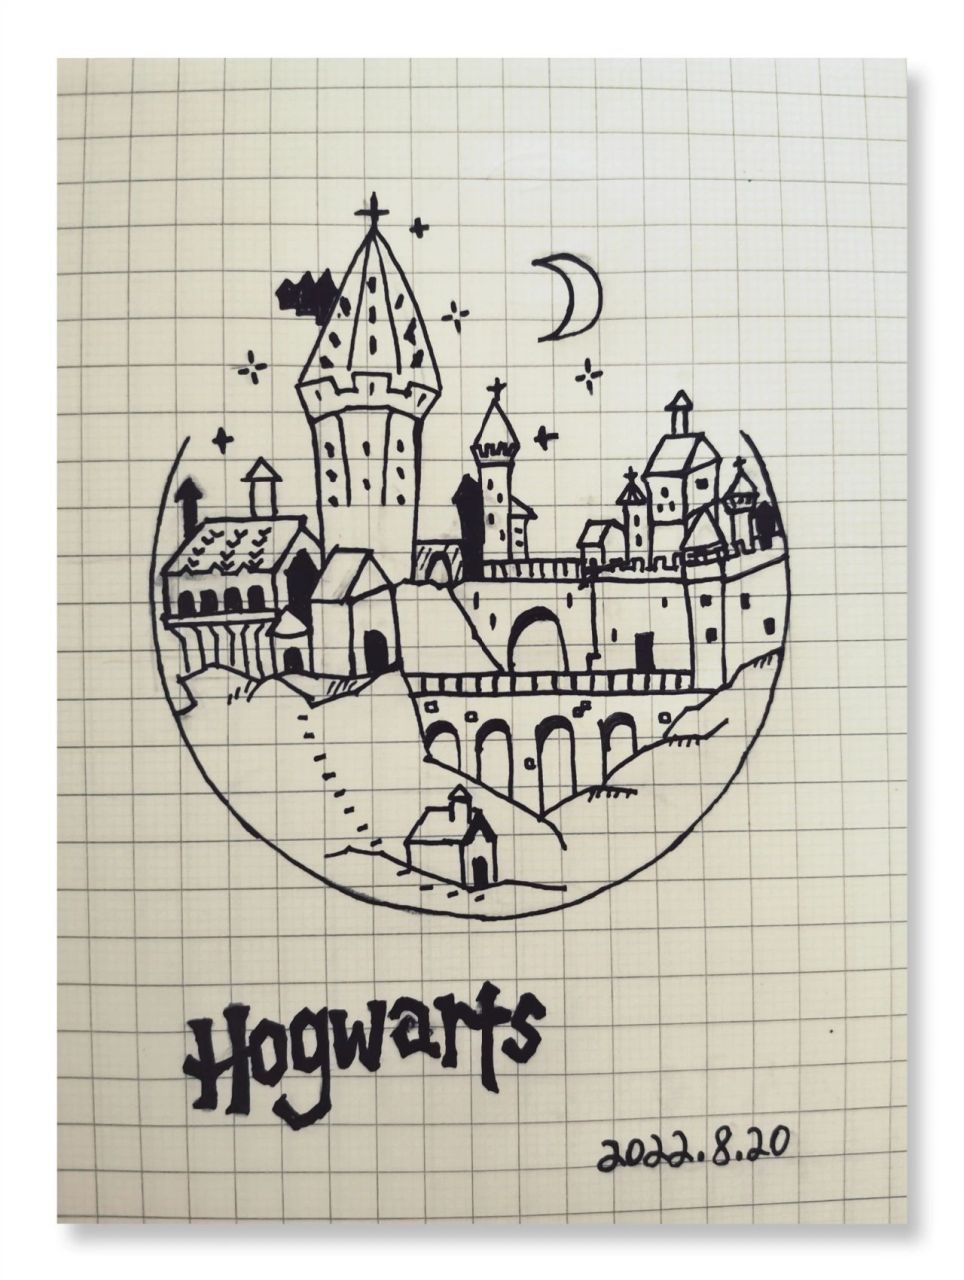 霍格沃茨城堡 简笔画图片